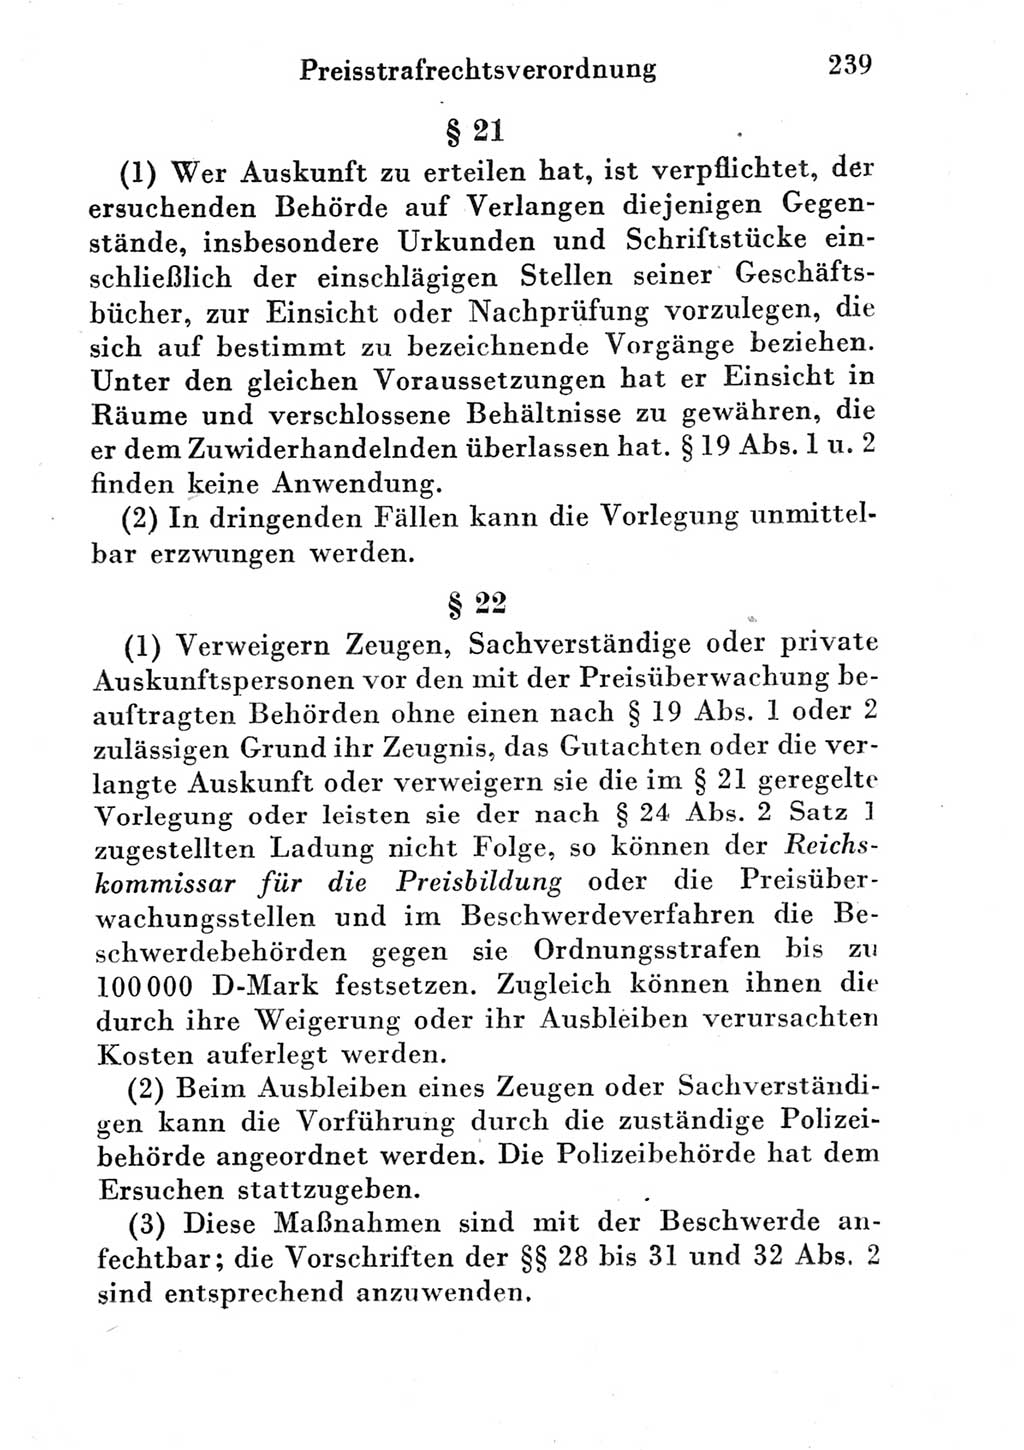 Strafgesetzbuch (StGB) und andere Strafgesetze [Deutsche Demokratische Republik (DDR)] 1951, Seite 239 (StGB Strafges. DDR 1951, S. 239)